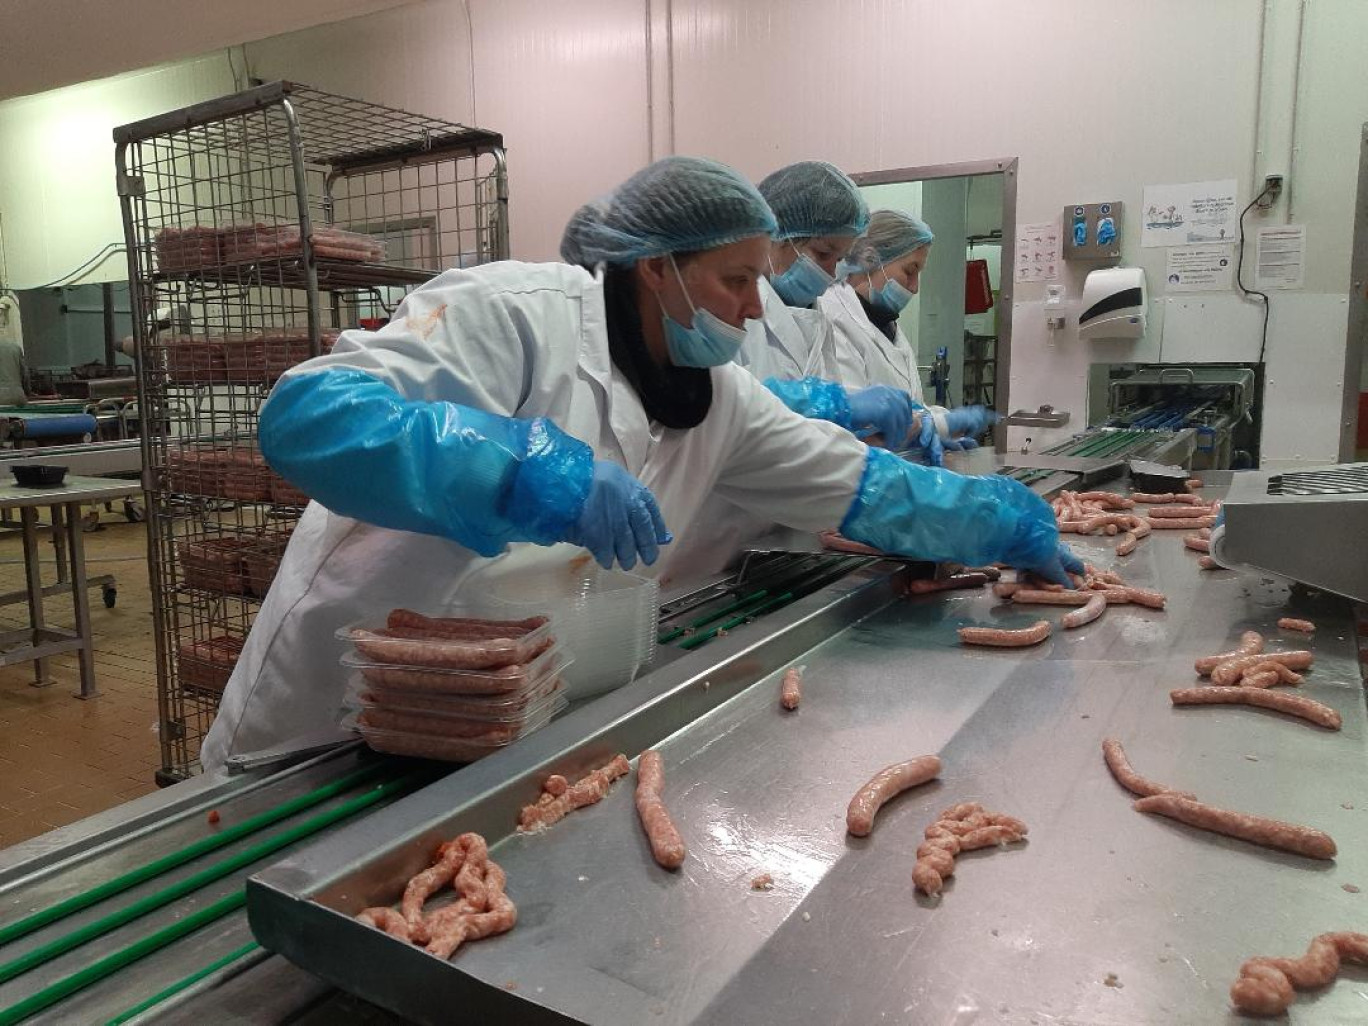 La fabrication de saucisses représente près de 60% des volumes produits par la Charcuterie des Flandres.